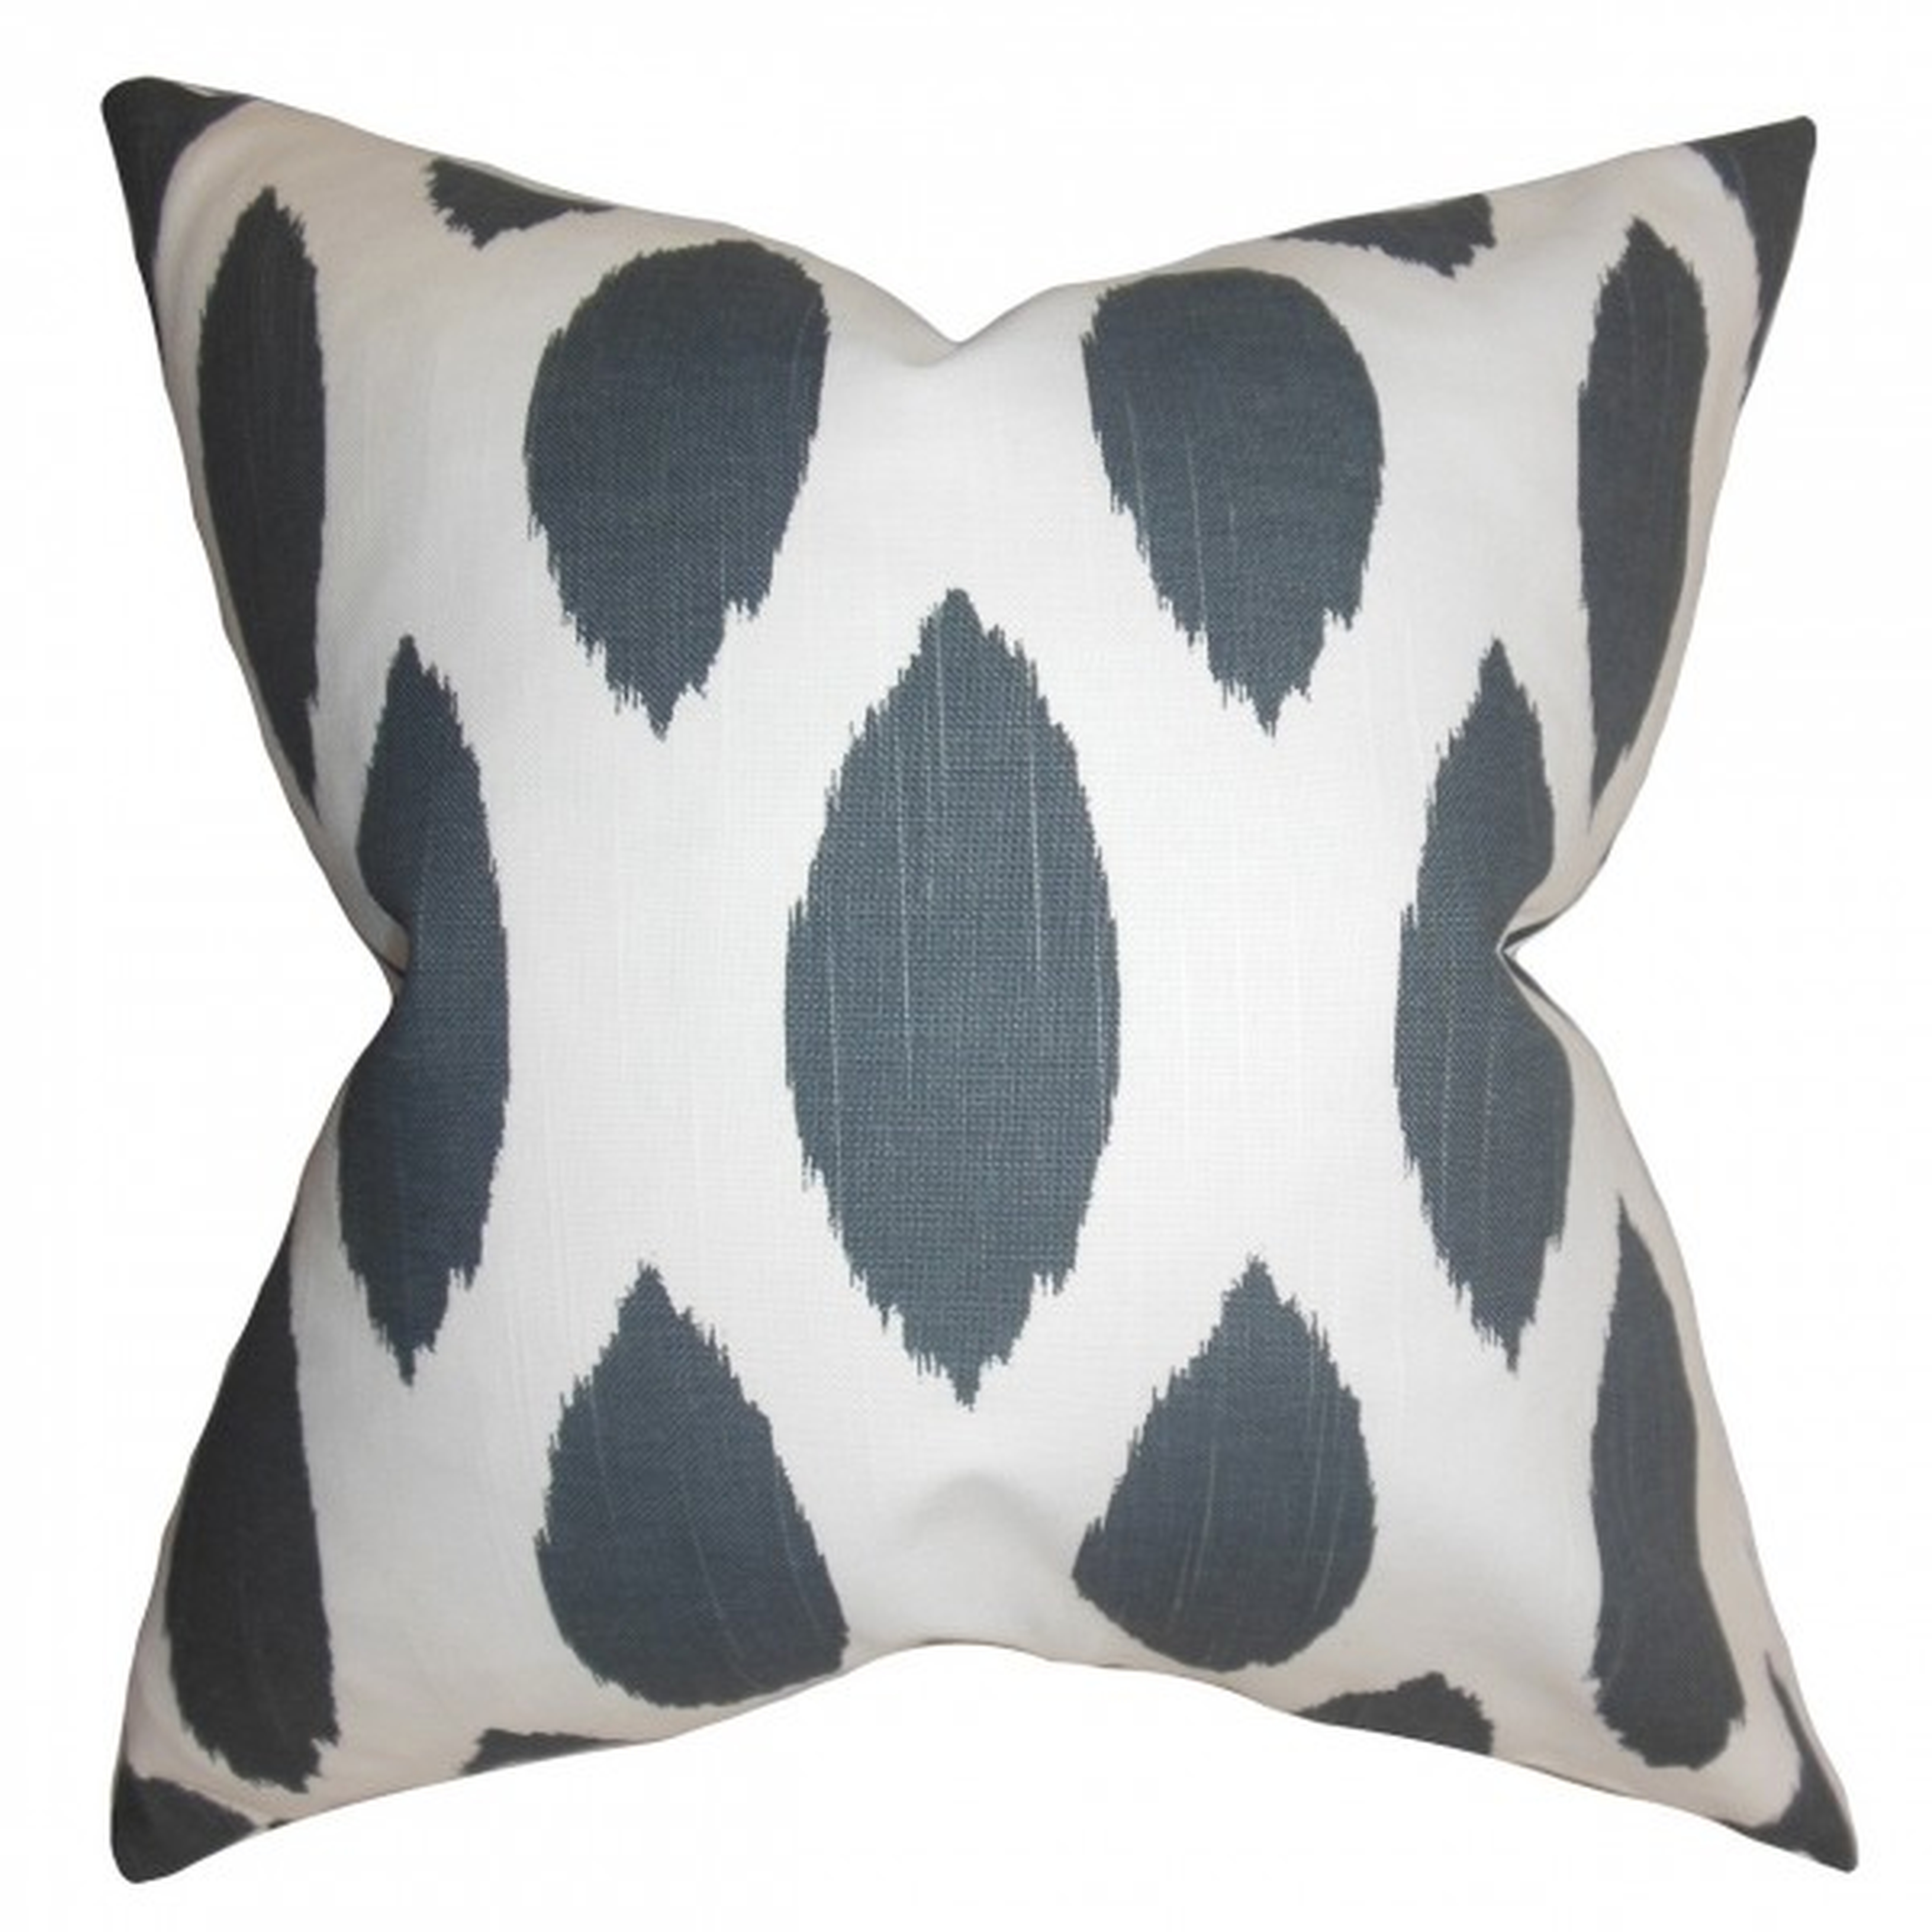 Juliaca Ikat Pillow Gray - 18" x 18" - Polyester Insert - Linen & Seam